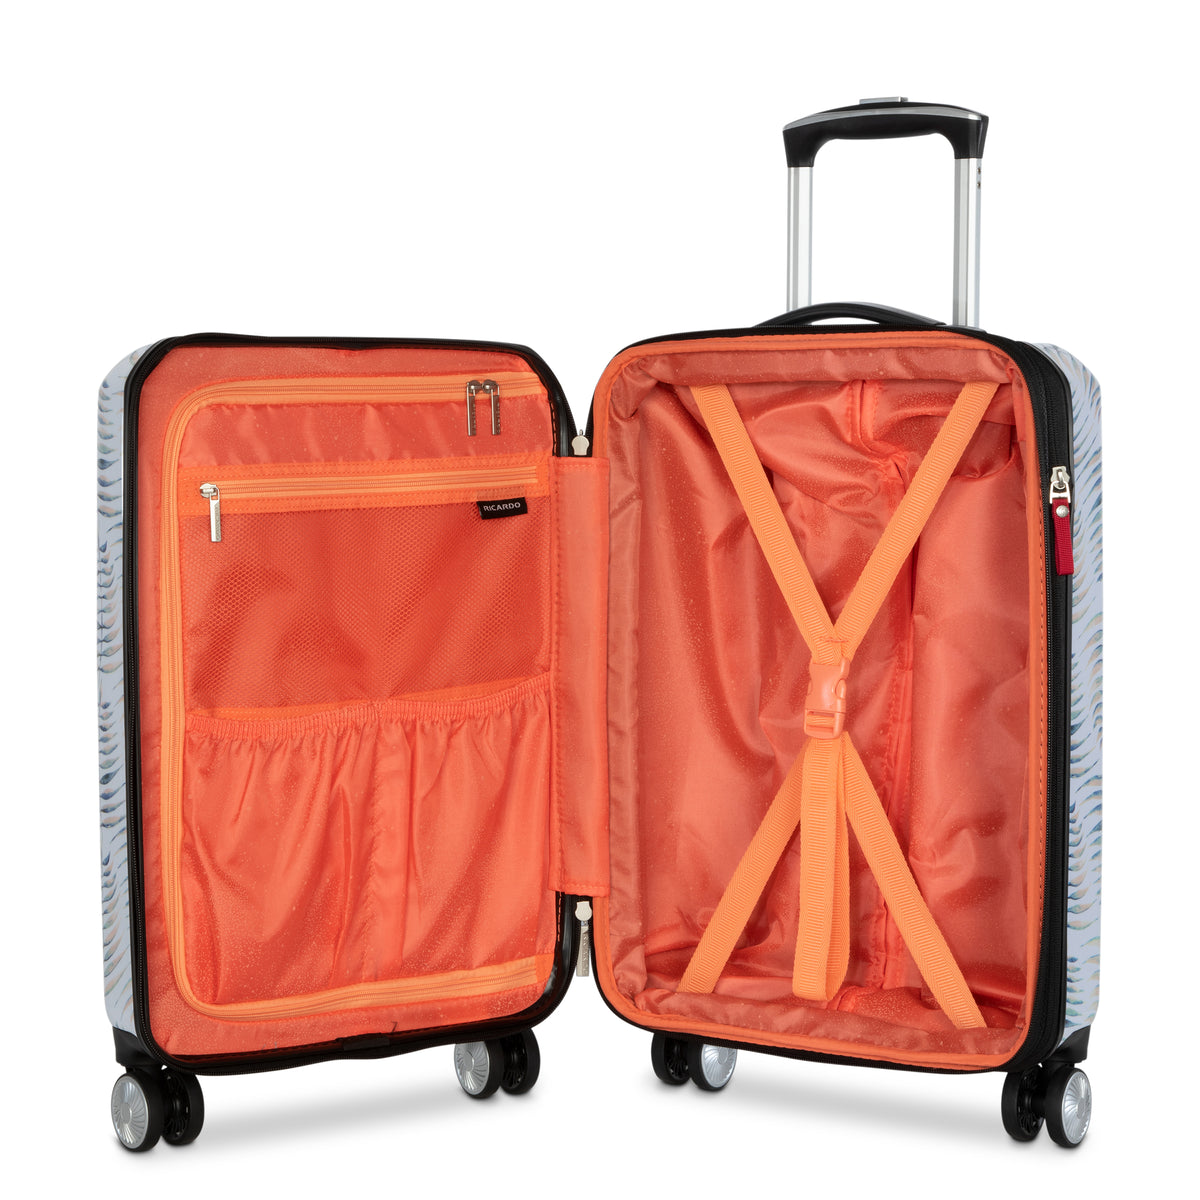 Florence 2.0 Hardside 2-Piece Luggage Set